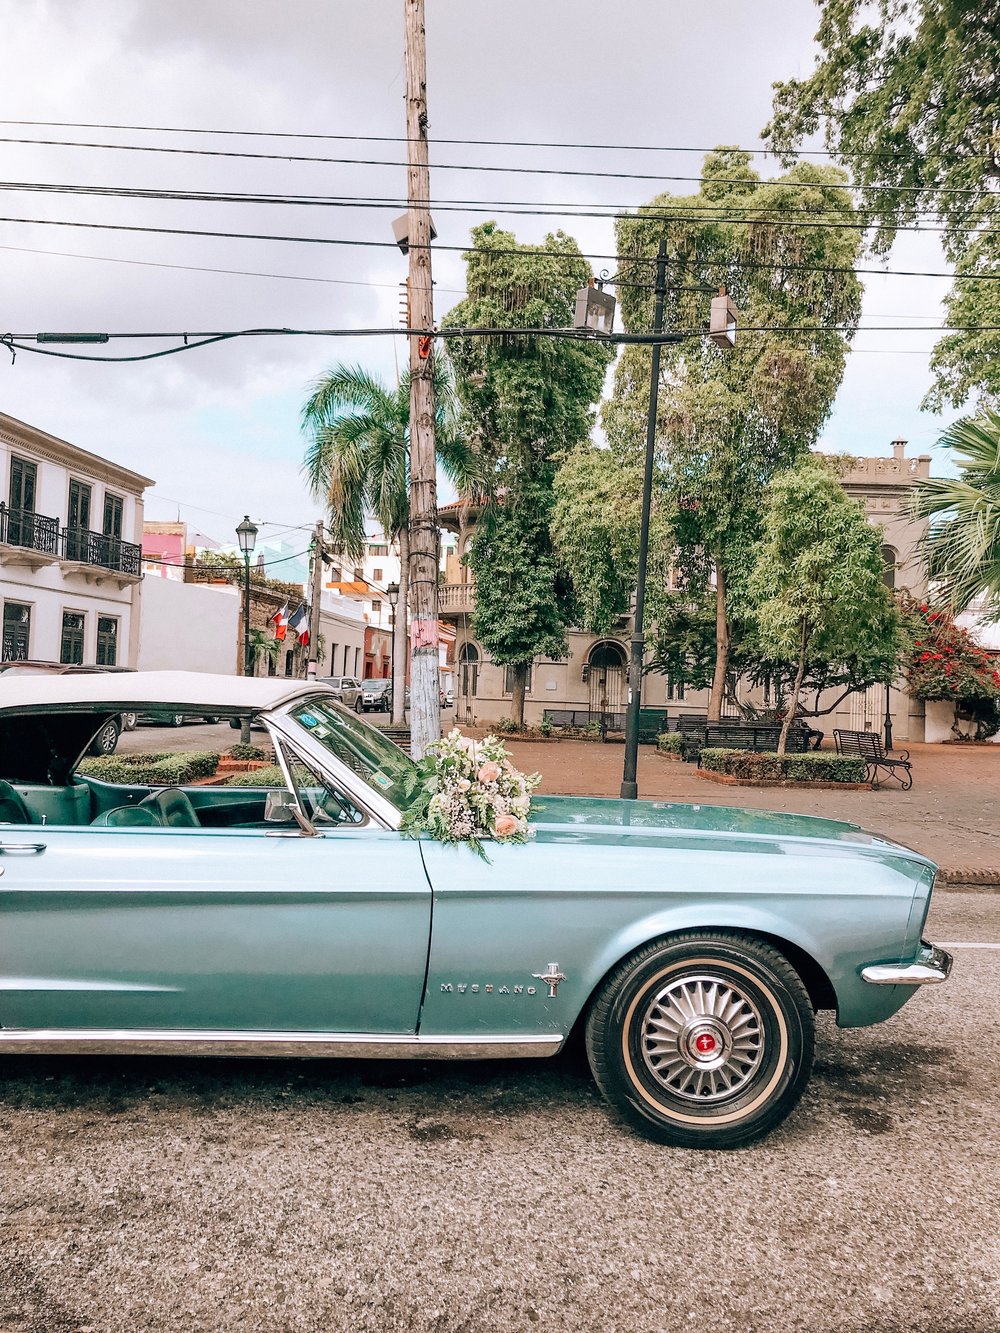 República Dominicana, uma semana com @godomrep 